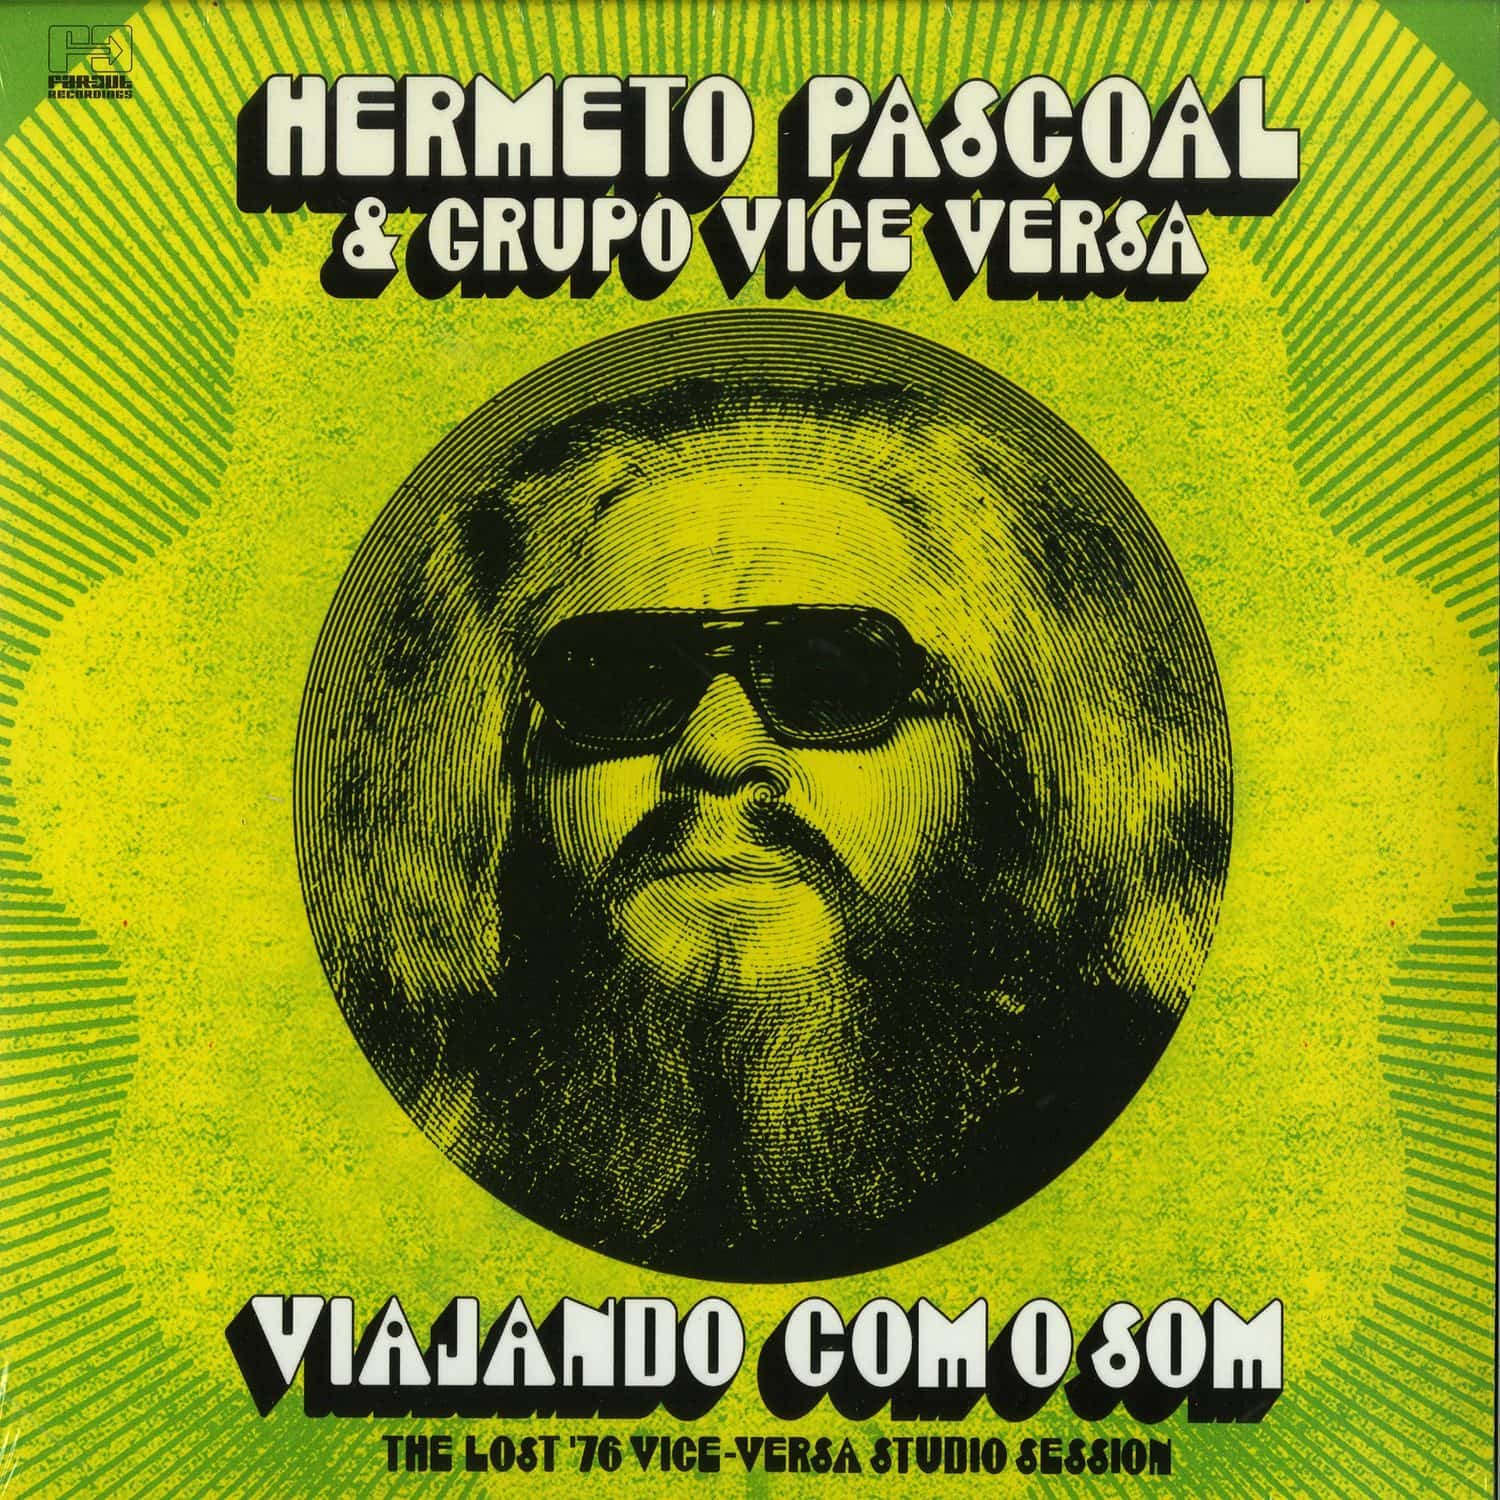 Hermeto Pascoal & Grupo Vice Versa - VIAJANDO COM O SOM 